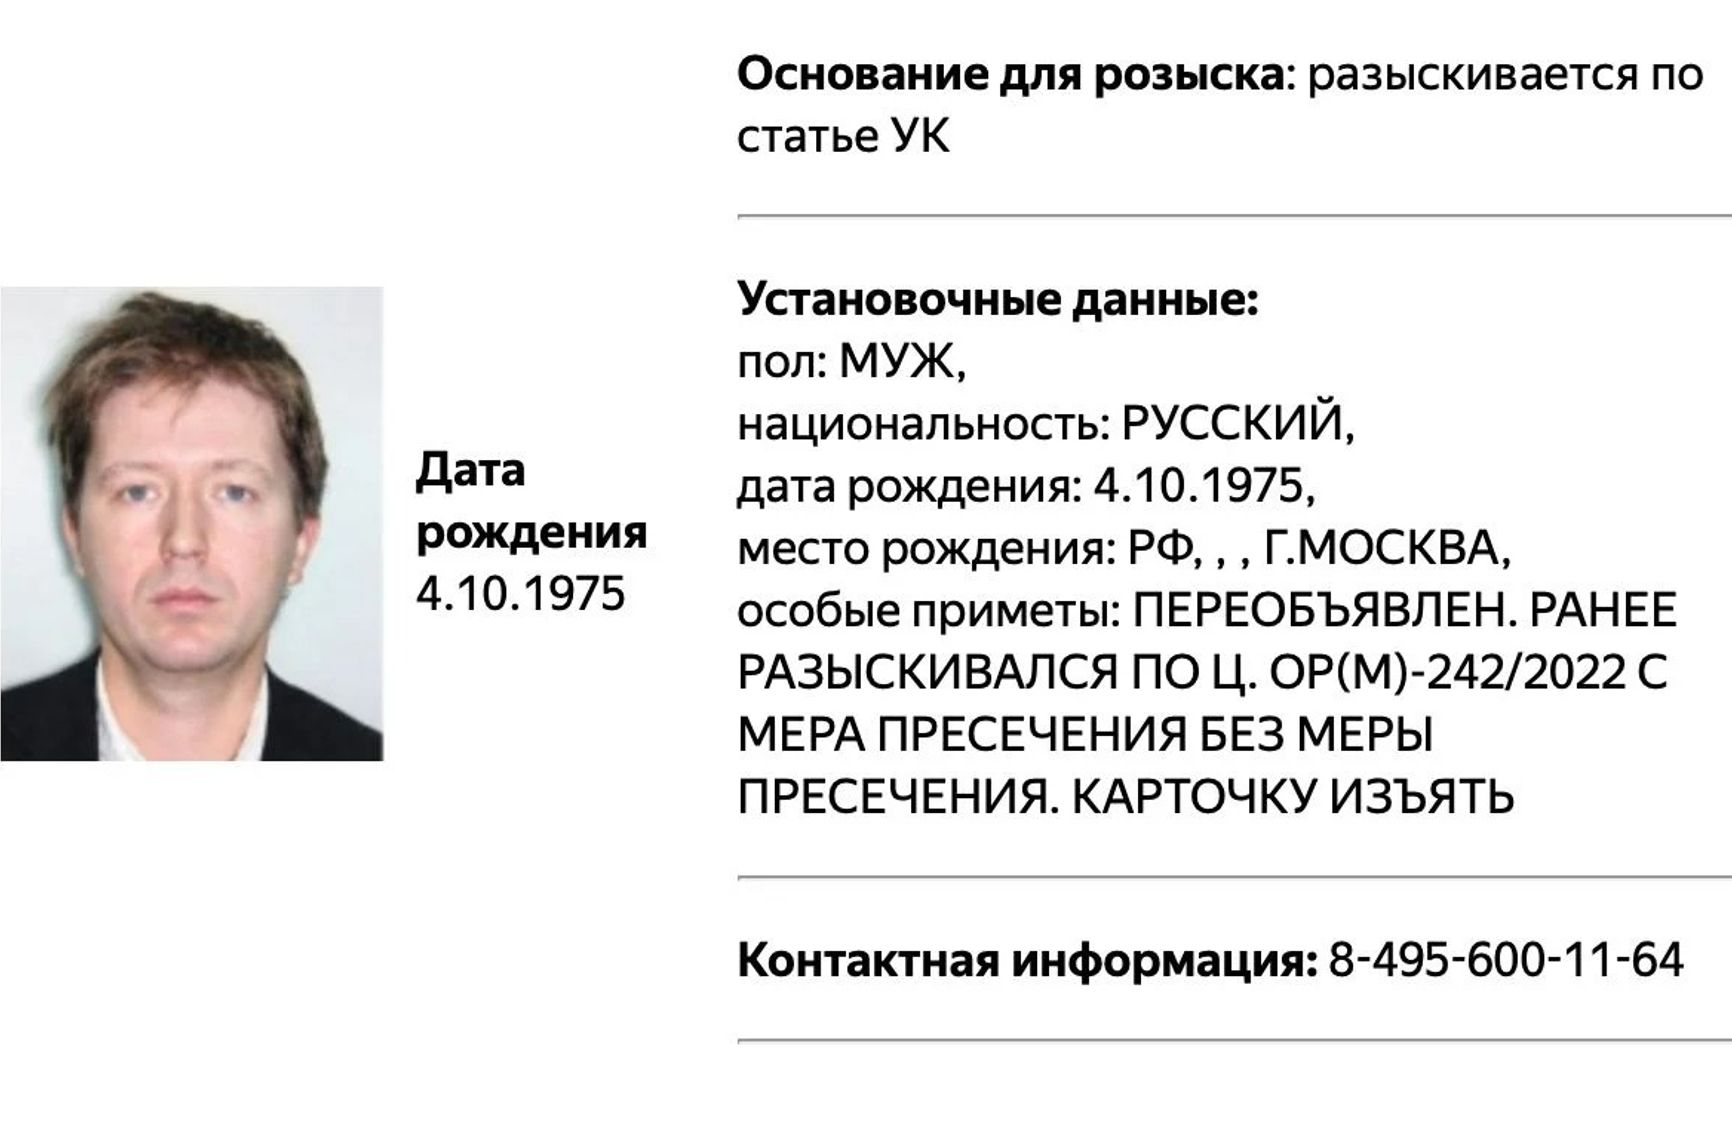 МВД объявило в розыск журналиста Андрея Солдатова. Его российские счета арестованы